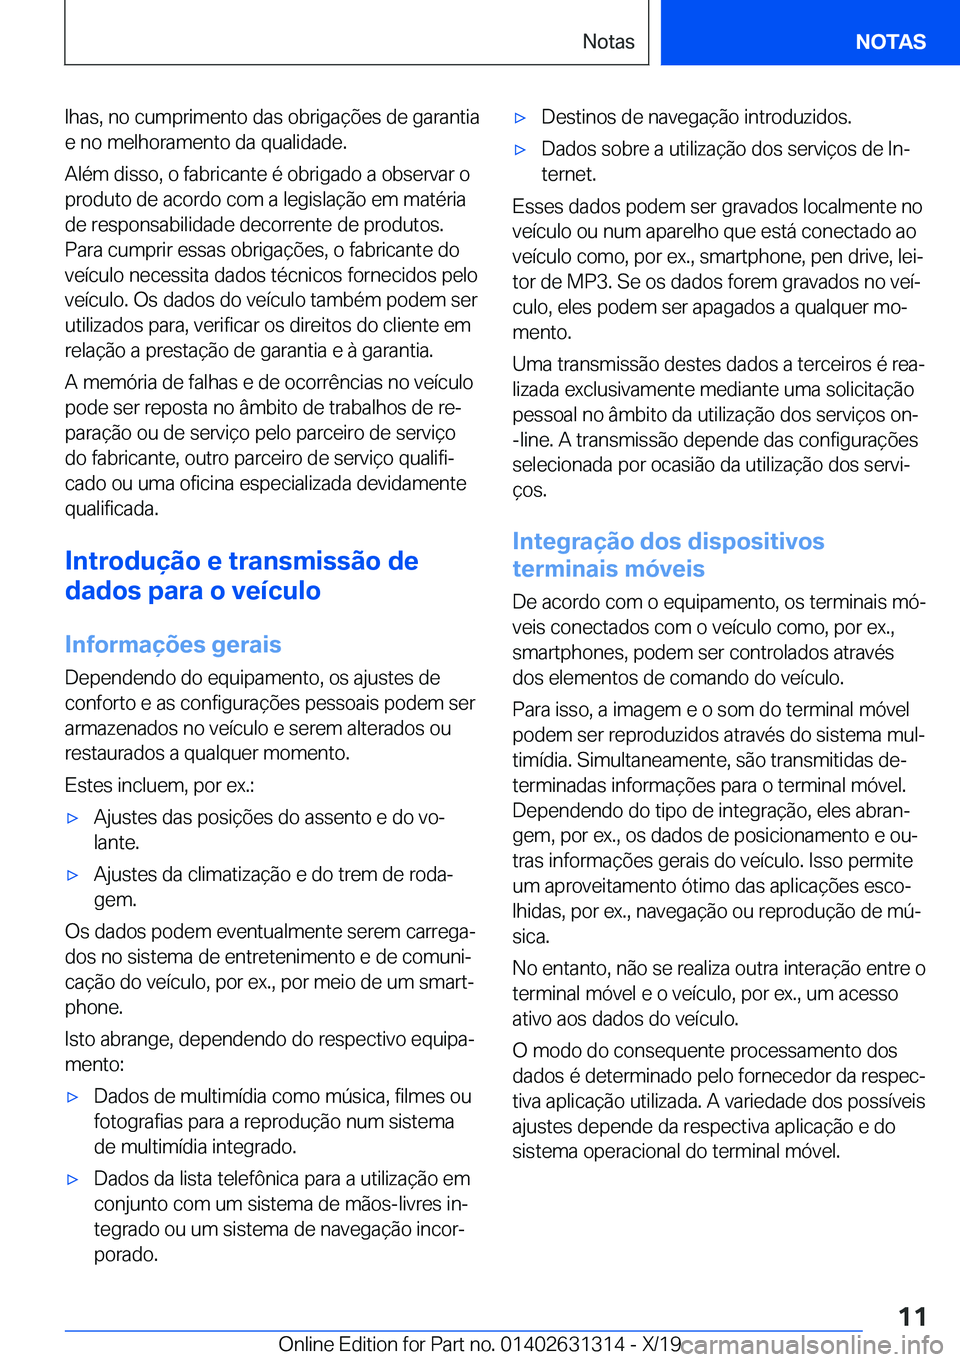 BMW M8 2020  Manual do condutor (in Portuguese) �l�h�a�s�,��n�o��c�u�m�p�r�i�m�e�n�t�o��d�a�s��o�b�r�i�g�a�